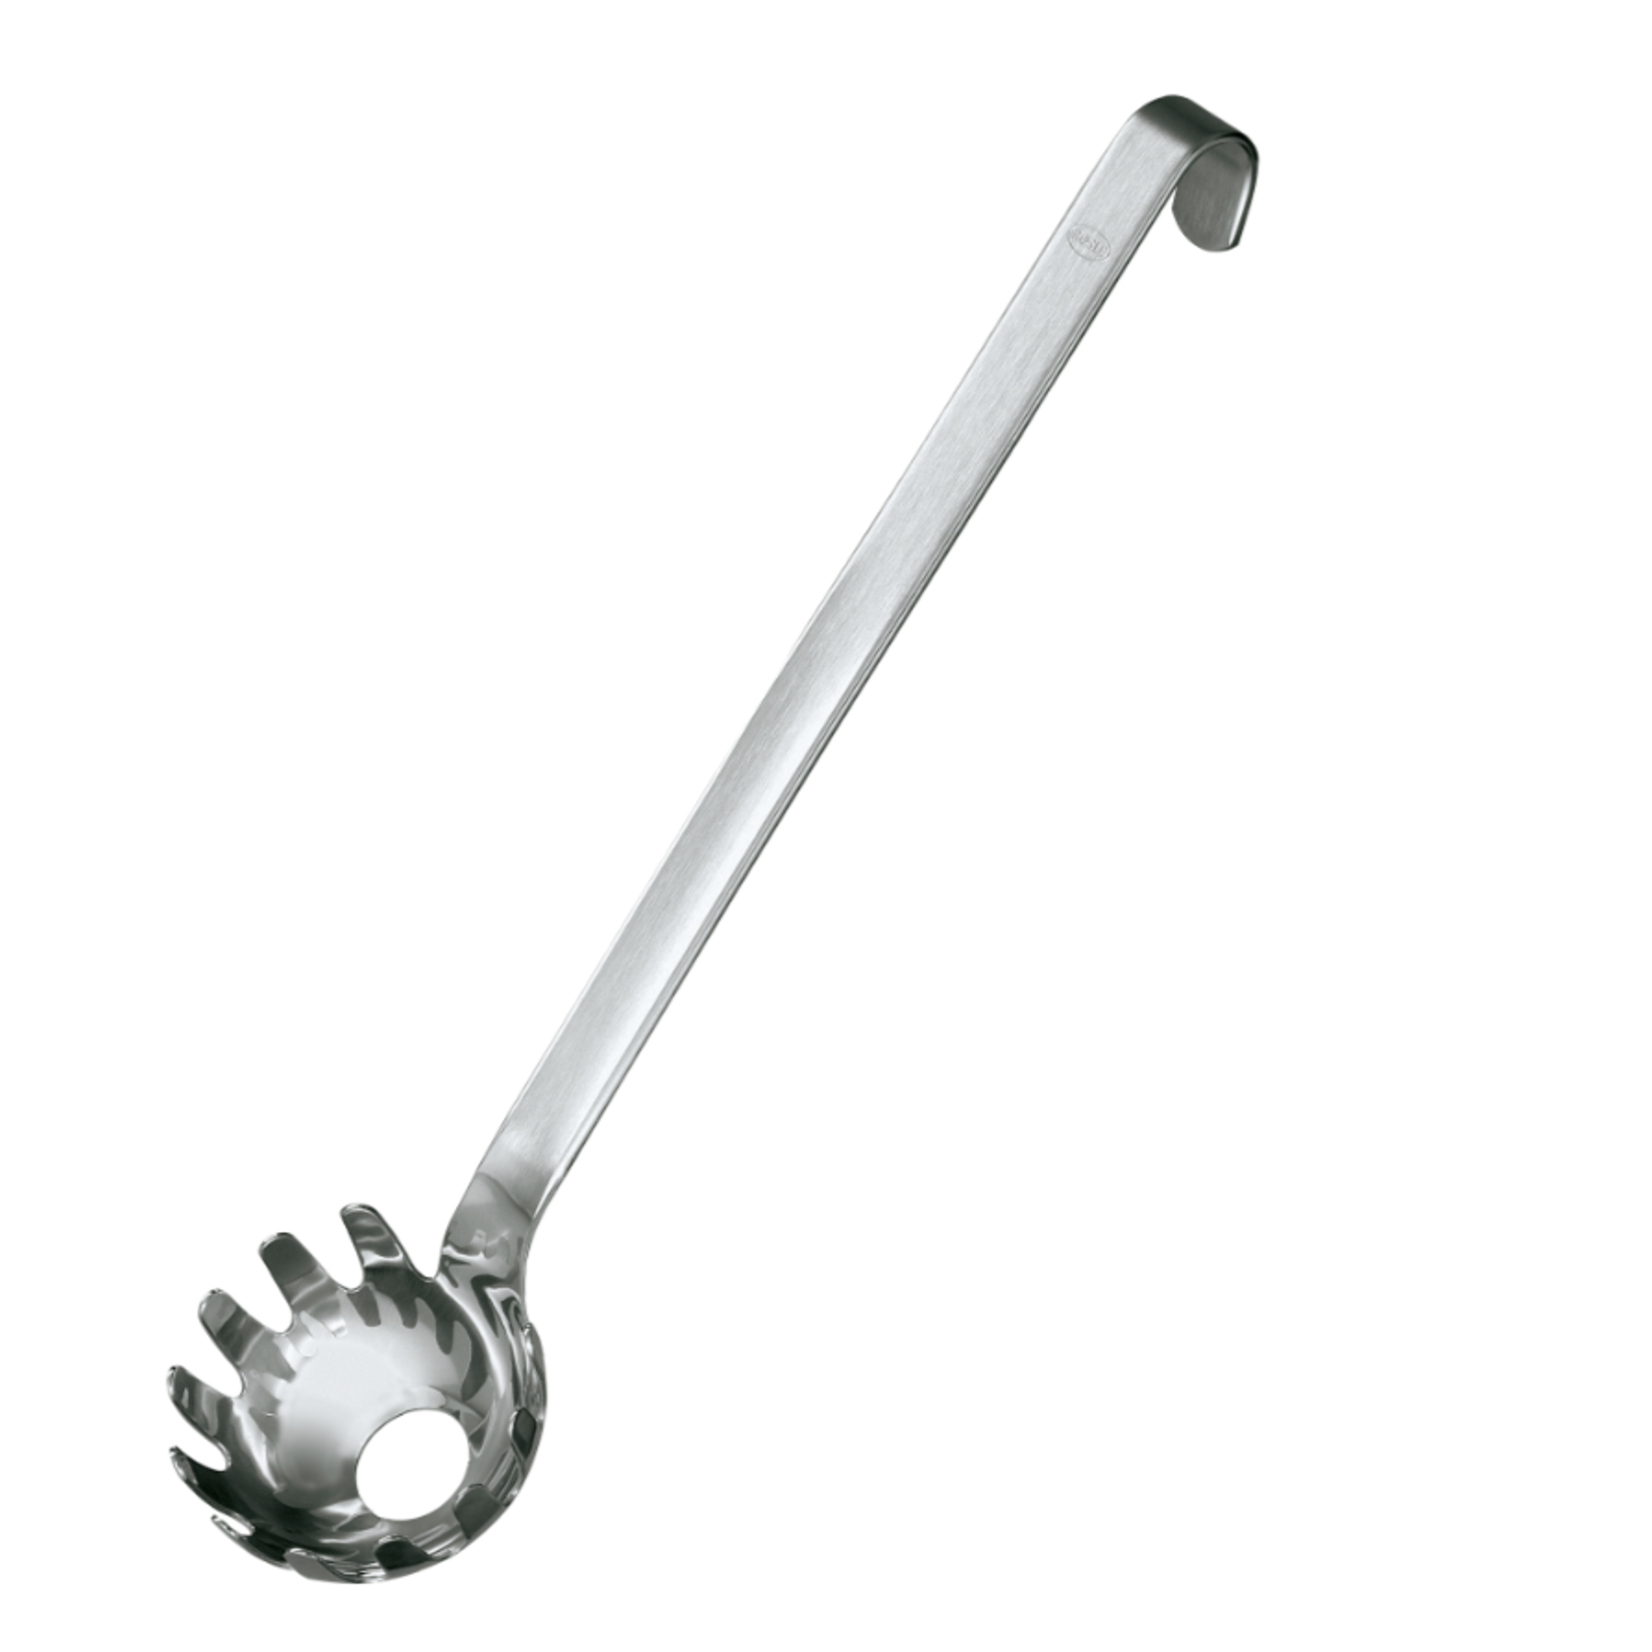 Rosle Rösle Spaghetti Spoon- hooked handle